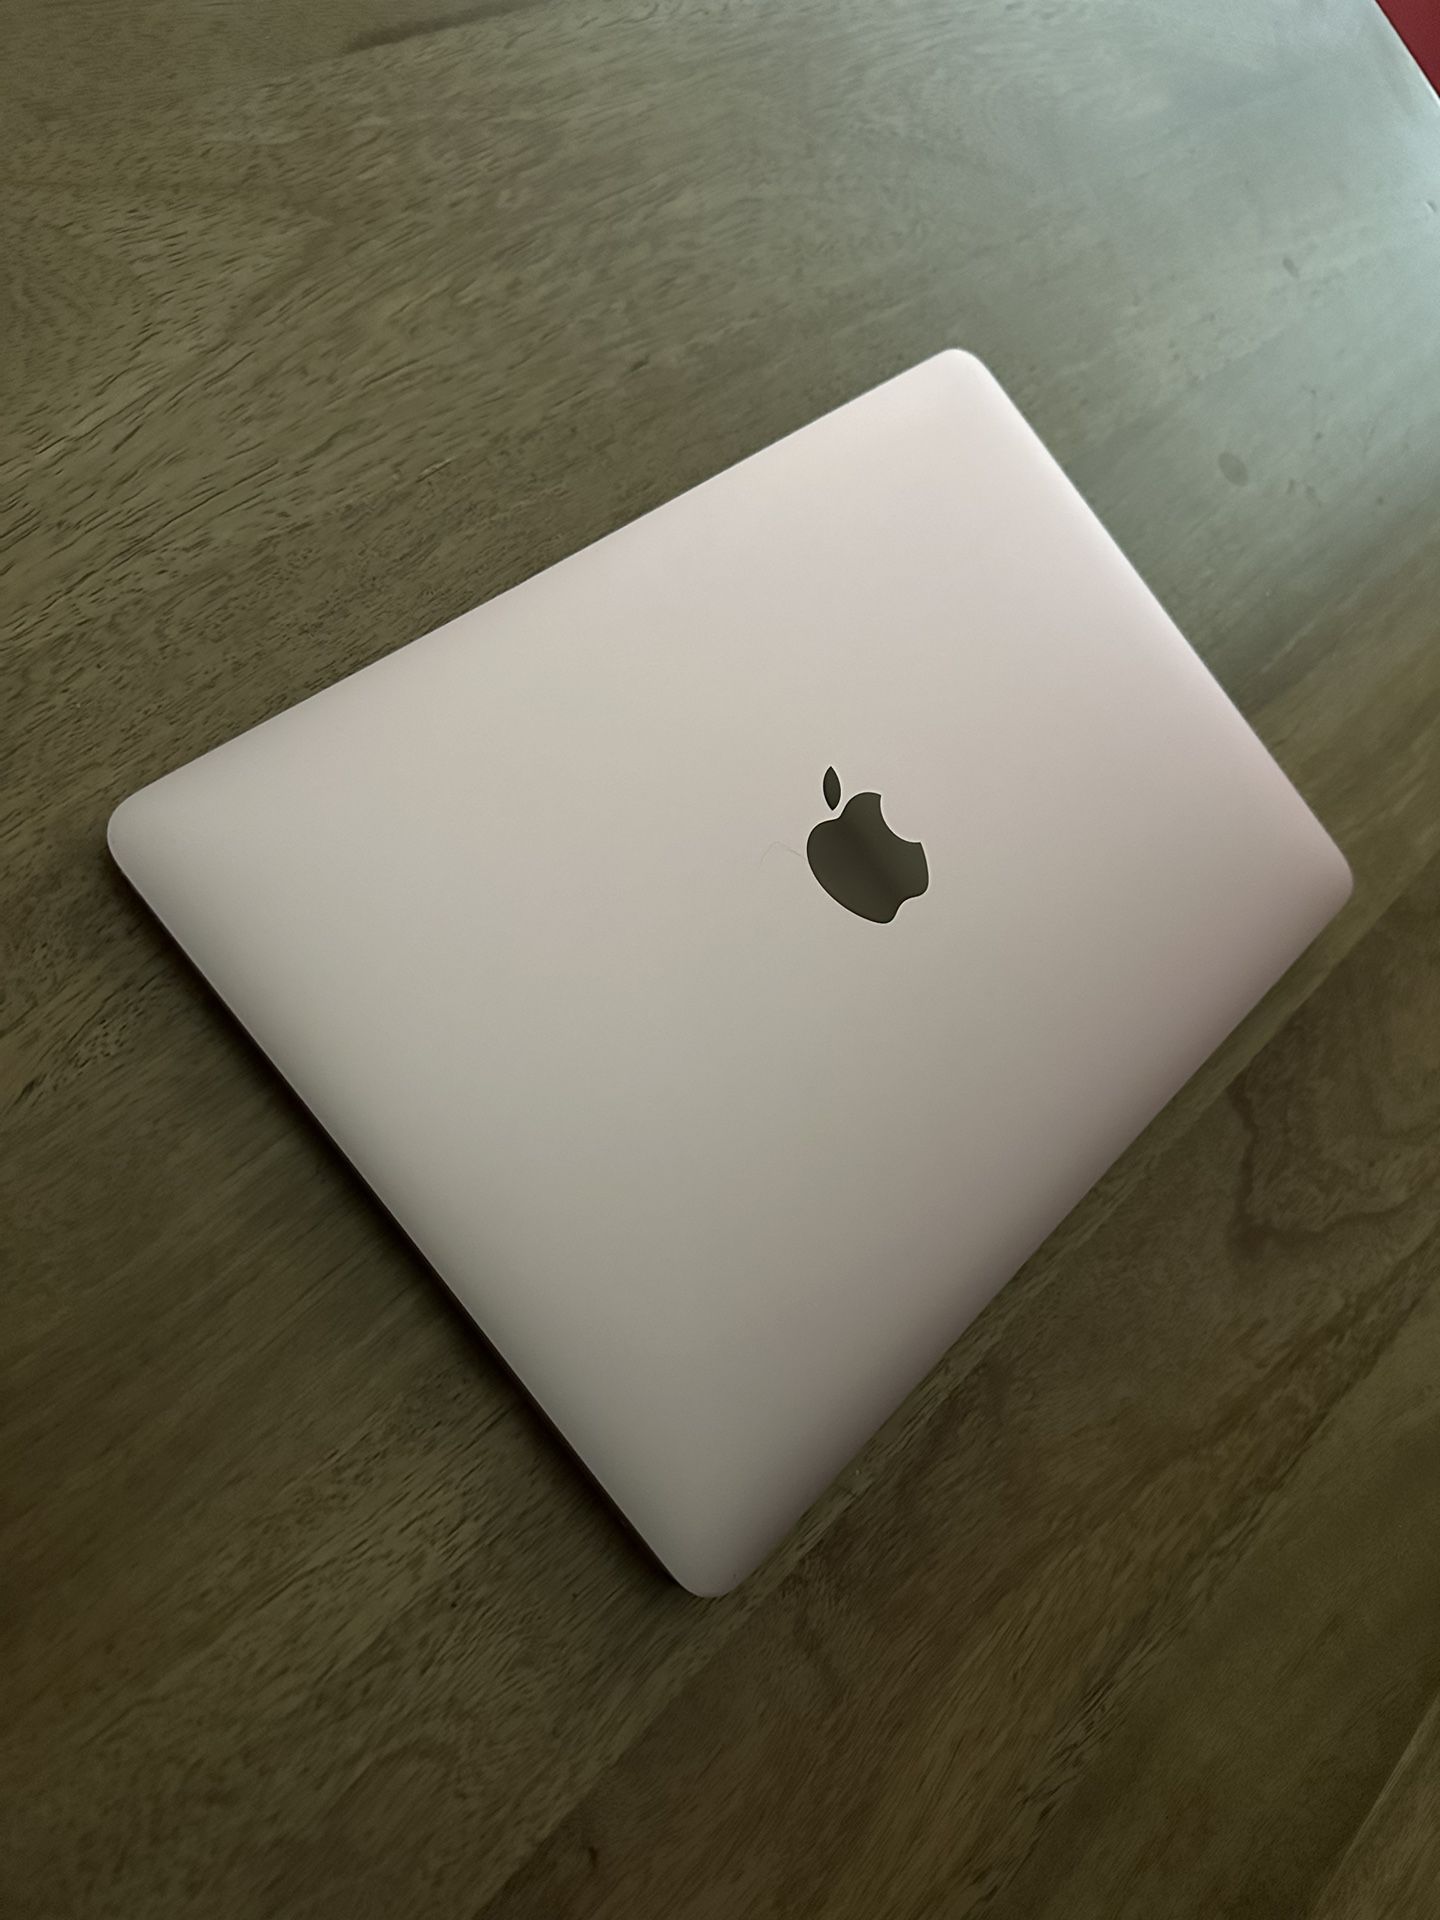 MacBook 12in 